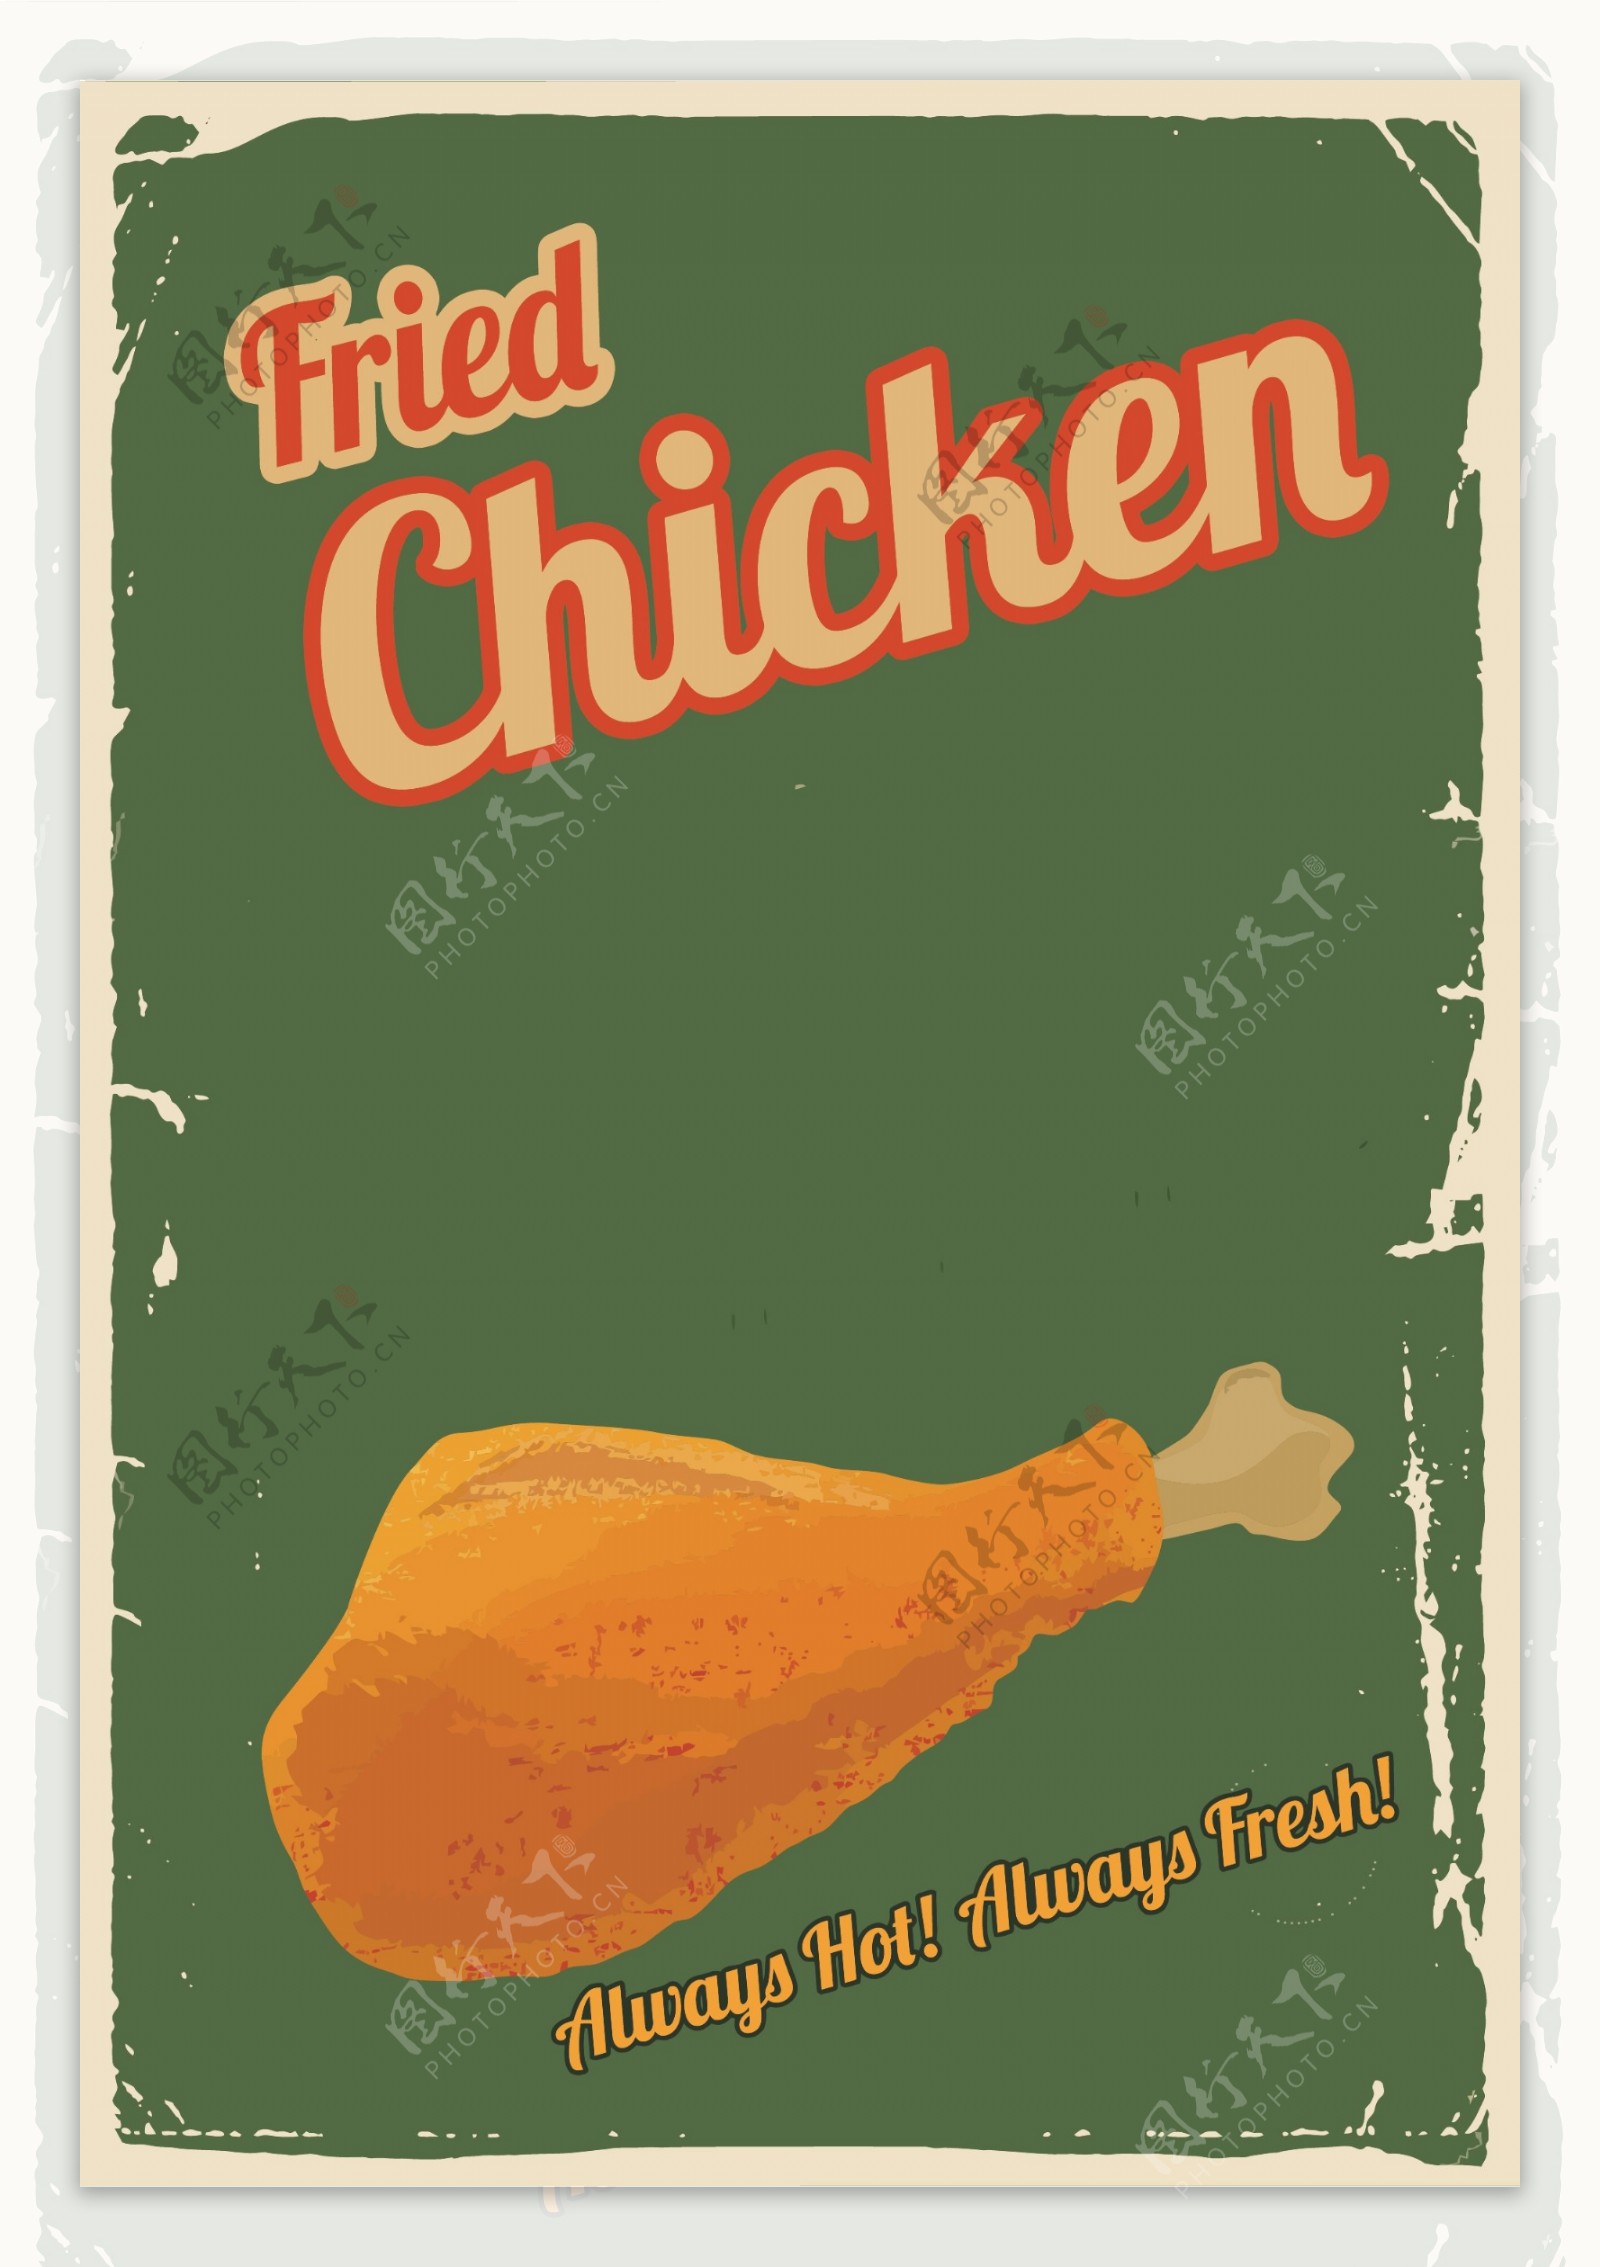 美味炸鸡手绘插画海报背景素材